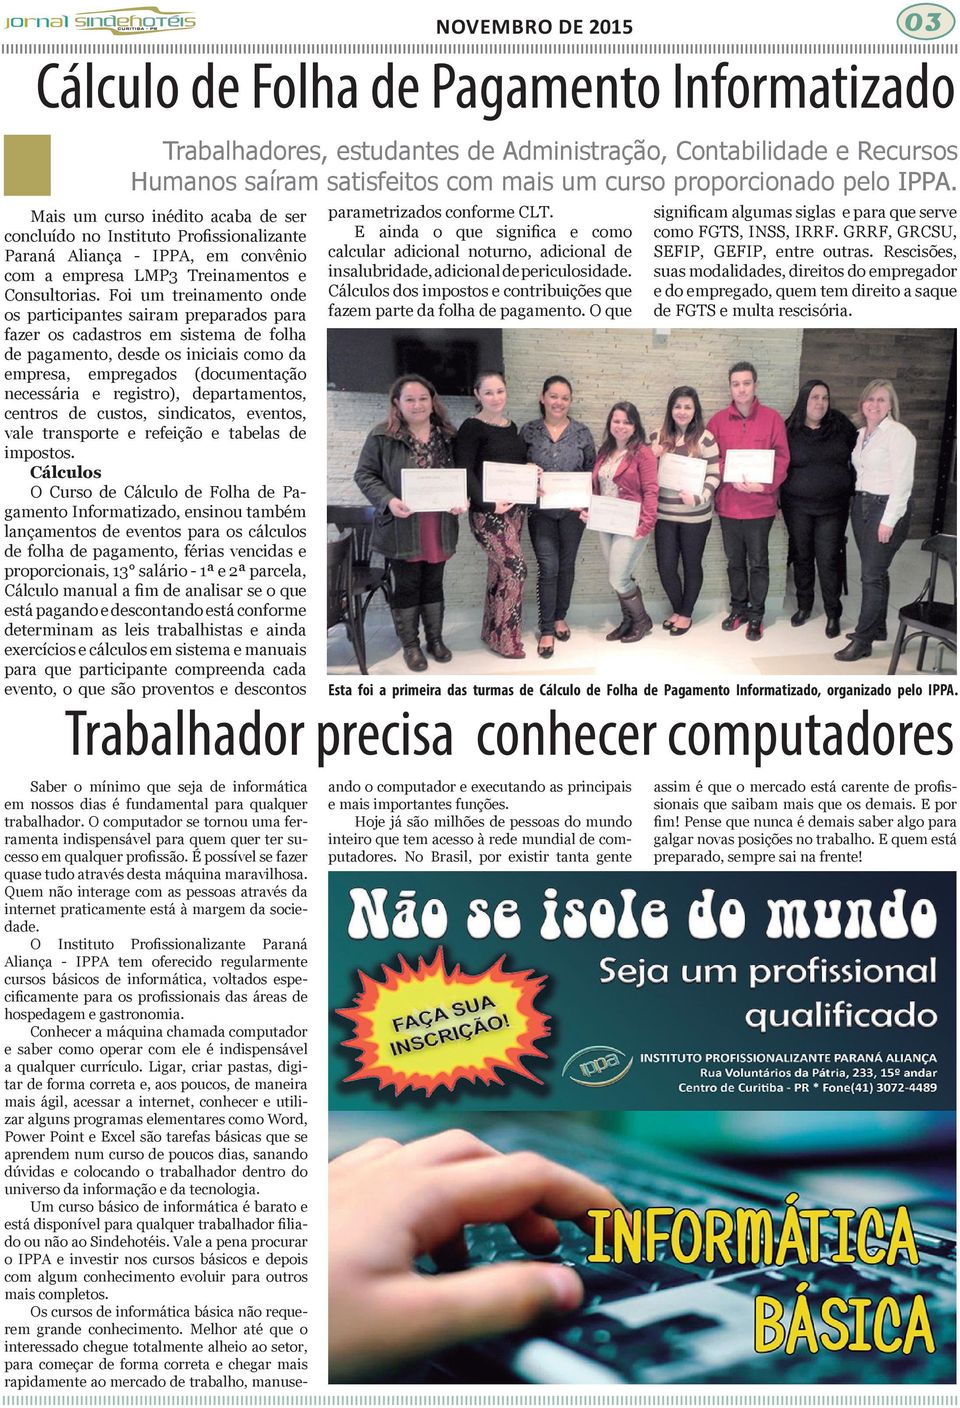 O Instituto Profissionalizante Paraná Aliança - IPPA tem oferecido regularmente cursos básicos de informática, voltados especificamente para os profissionais das áreas de hospedagem e gastronomia.